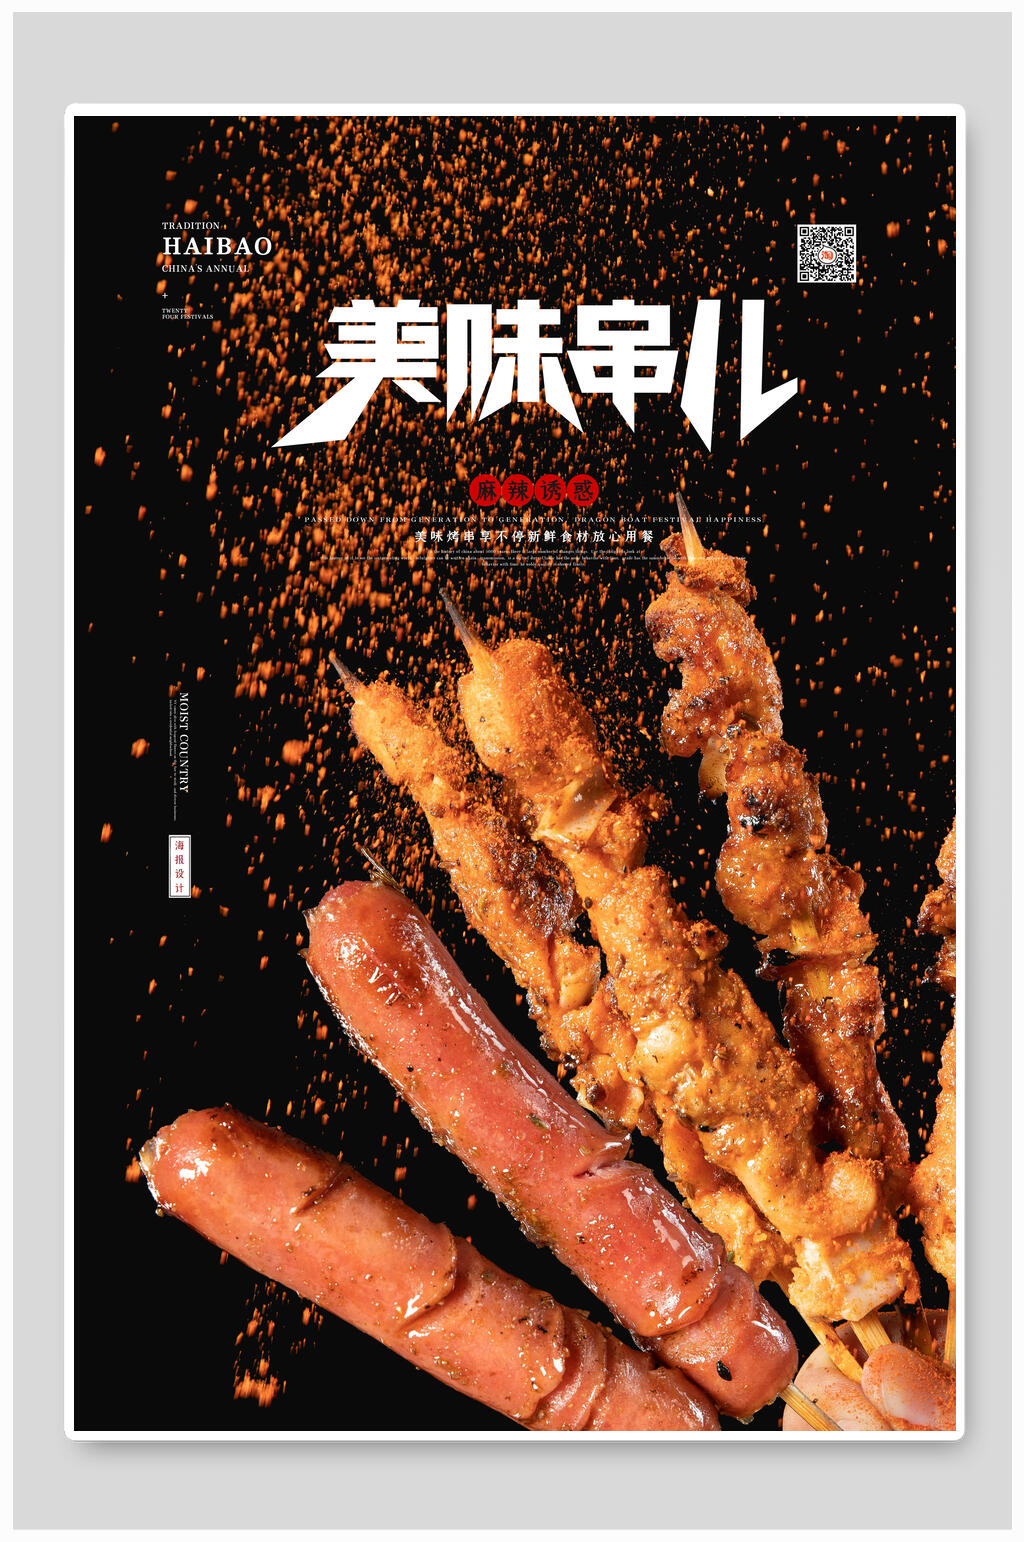 美观的美味串儿烧烤美食宣传海报素材下载,本次作品主题是平面广告